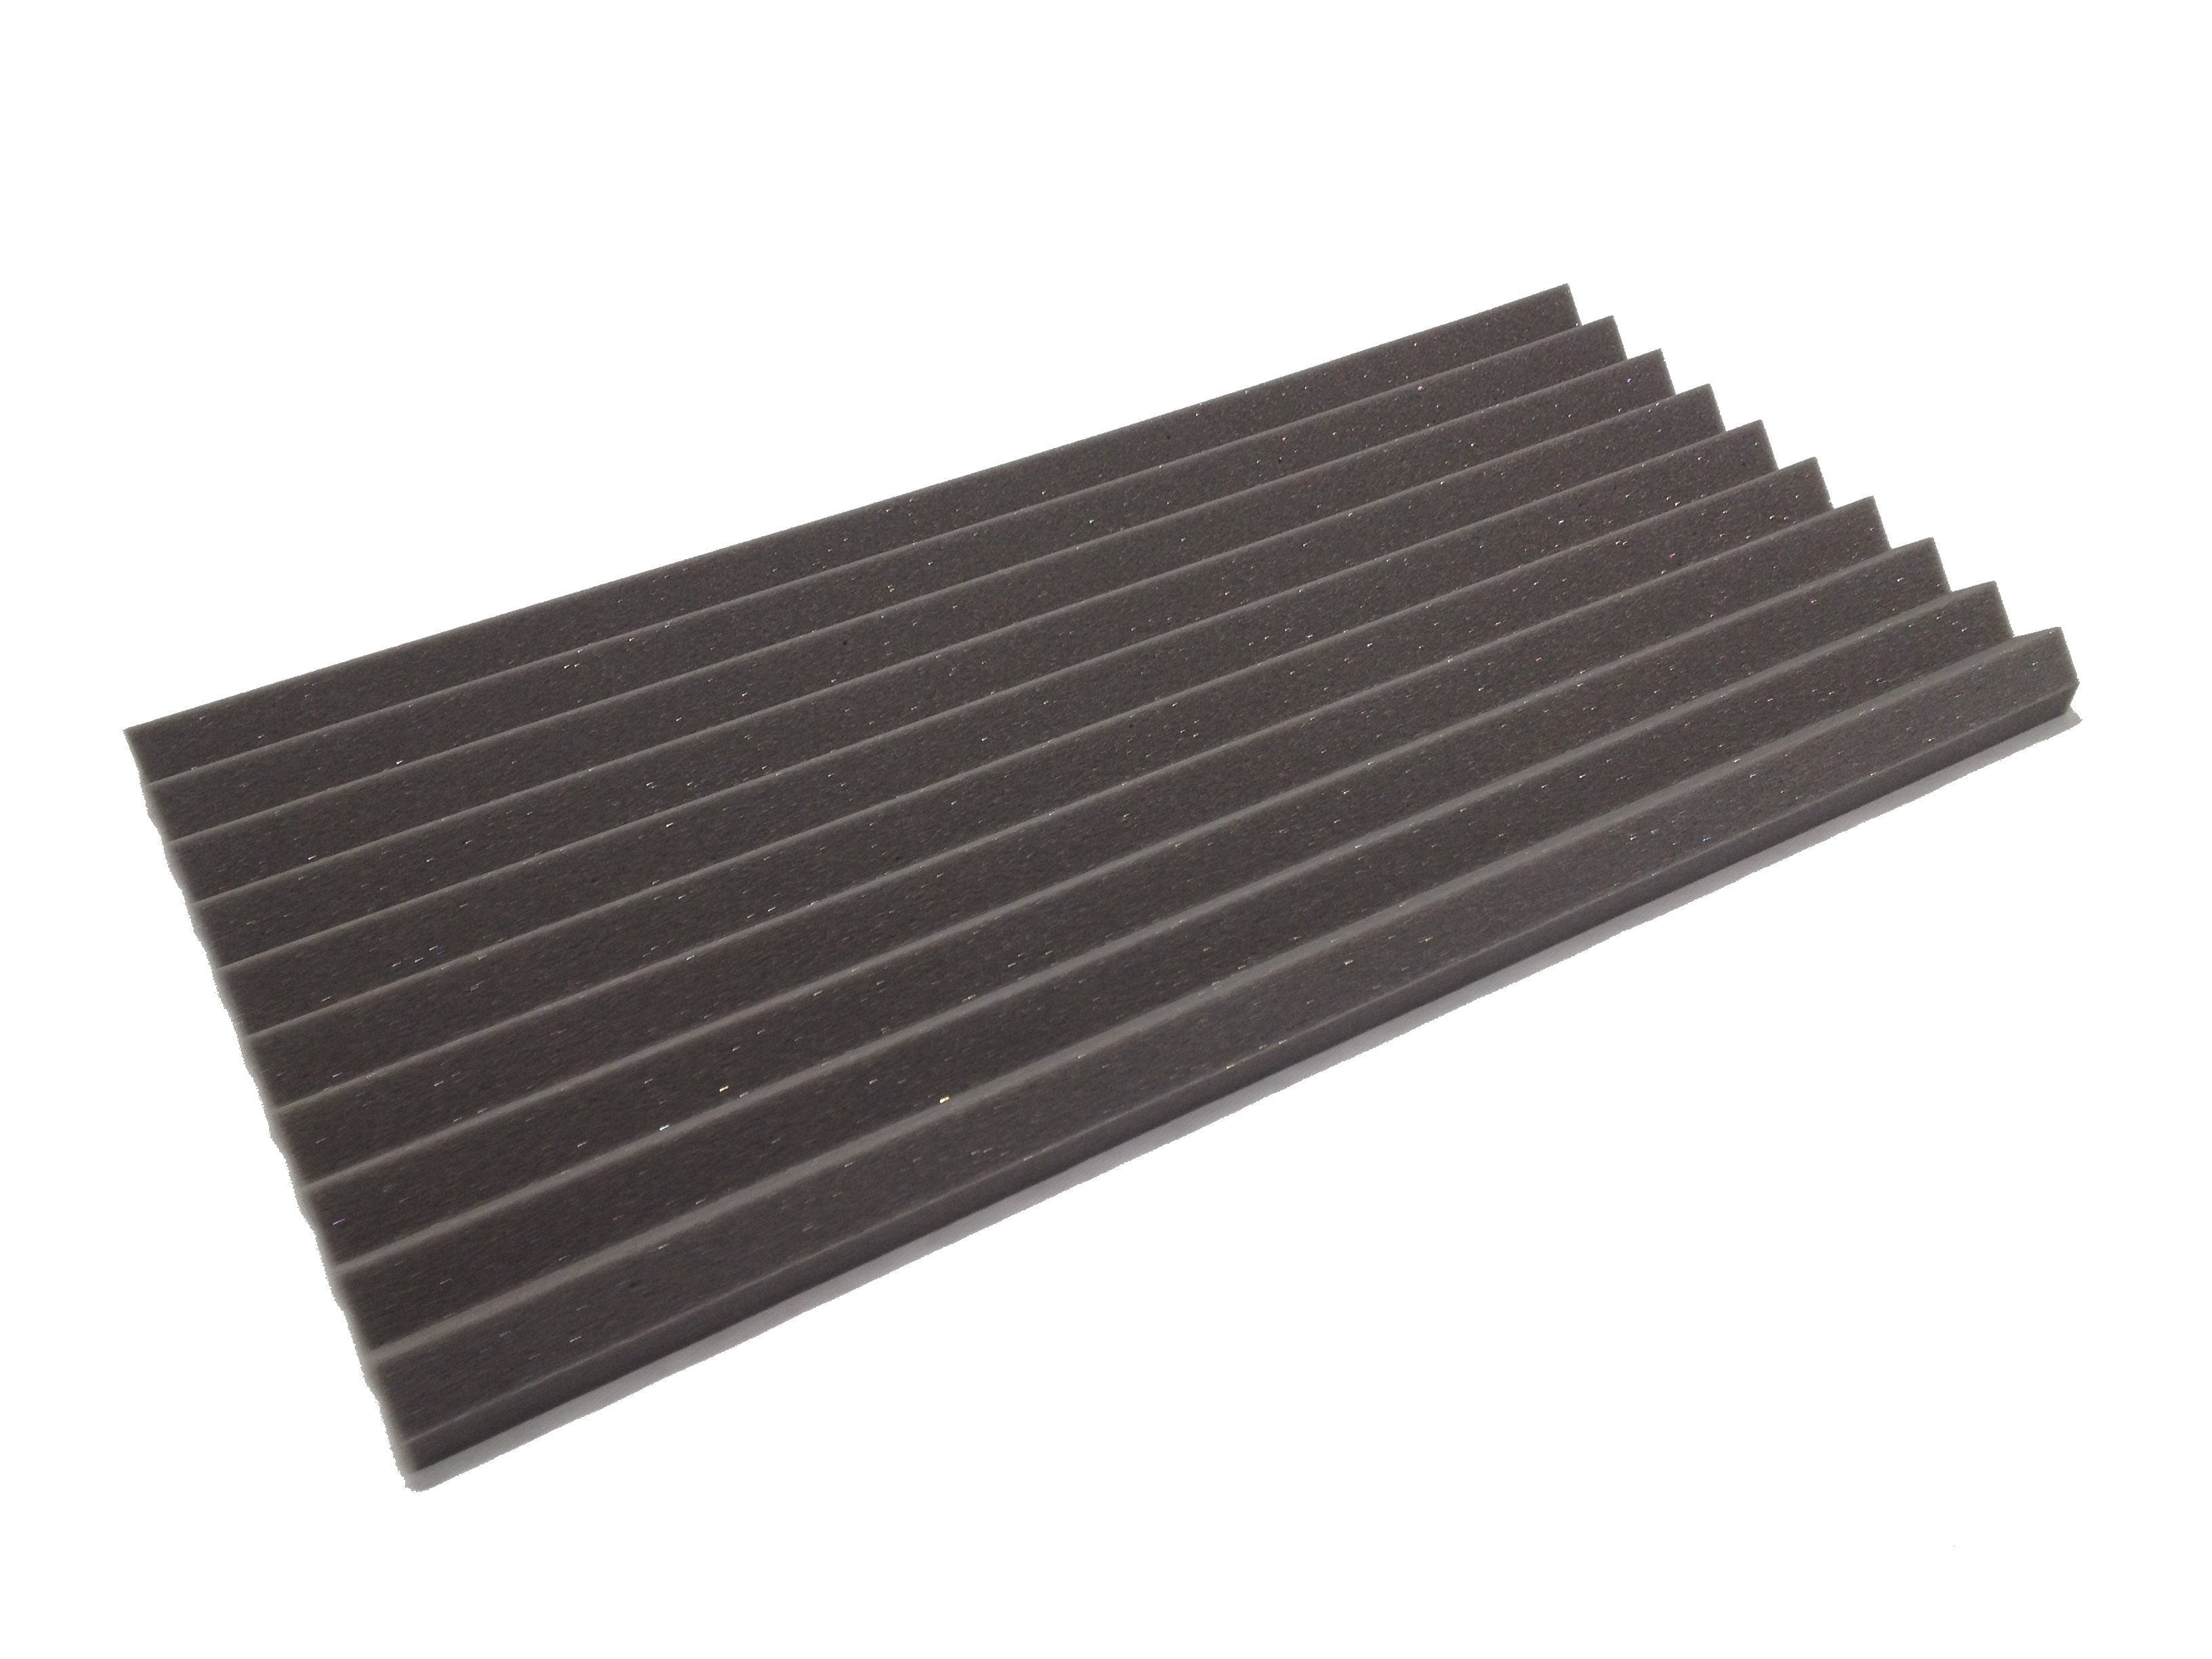 Wedge 30"x15" Acoustic Studio Foam Tile Kit - Advanced Acoustics